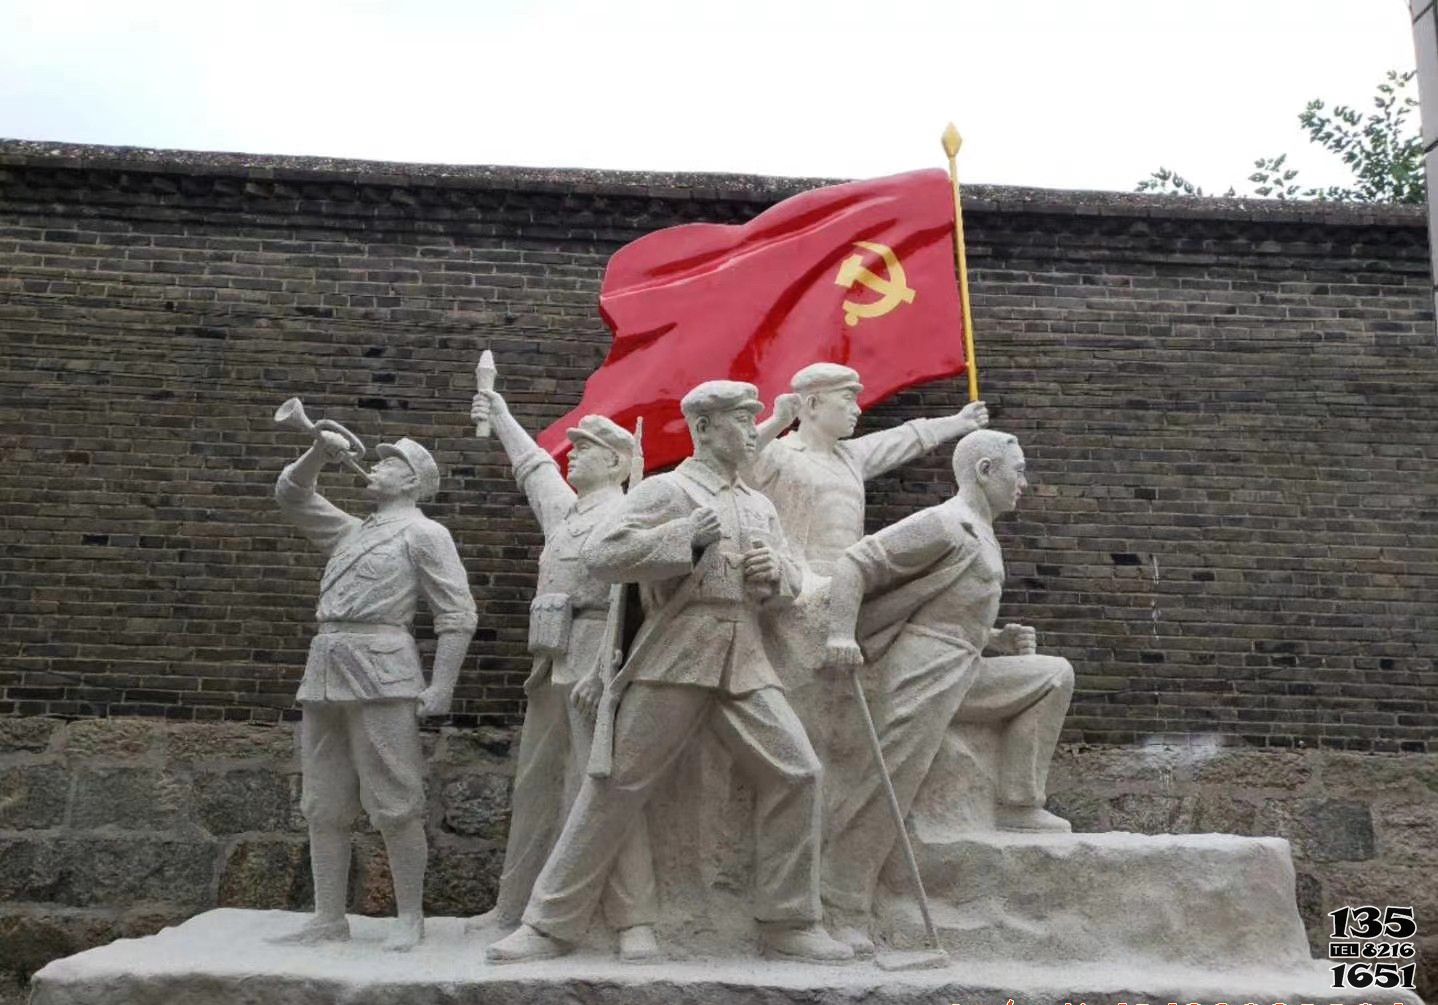 红军雕塑-景区大理石石雕红军雕塑高清图片